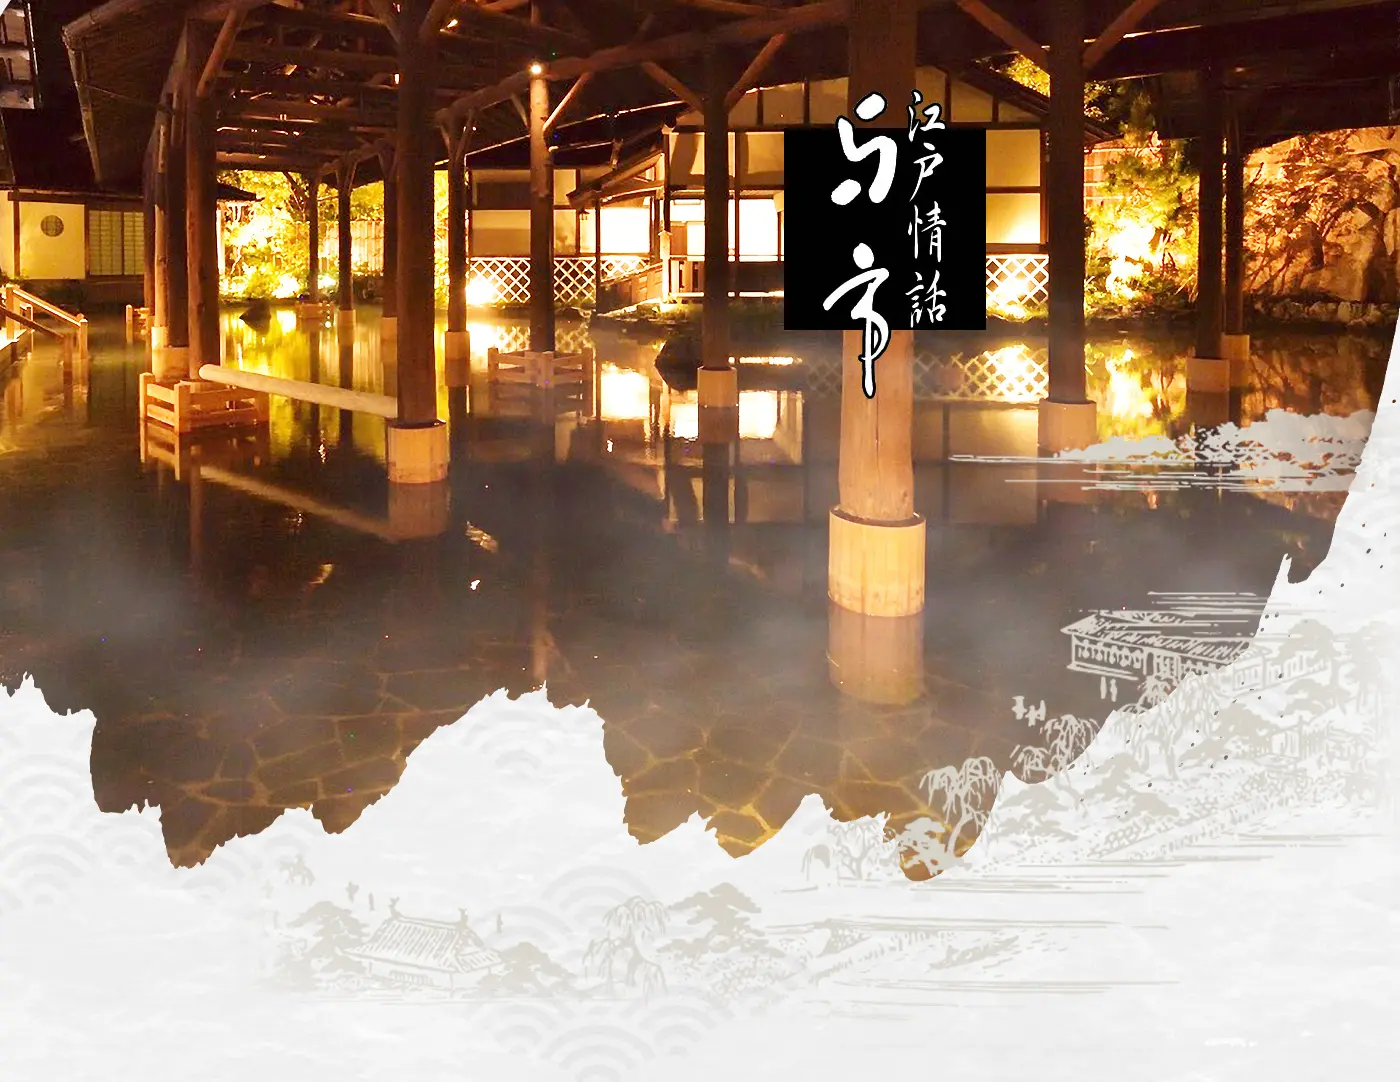 『江戸情話 与市』世界最大級の露天風呂、リニューアルオープン